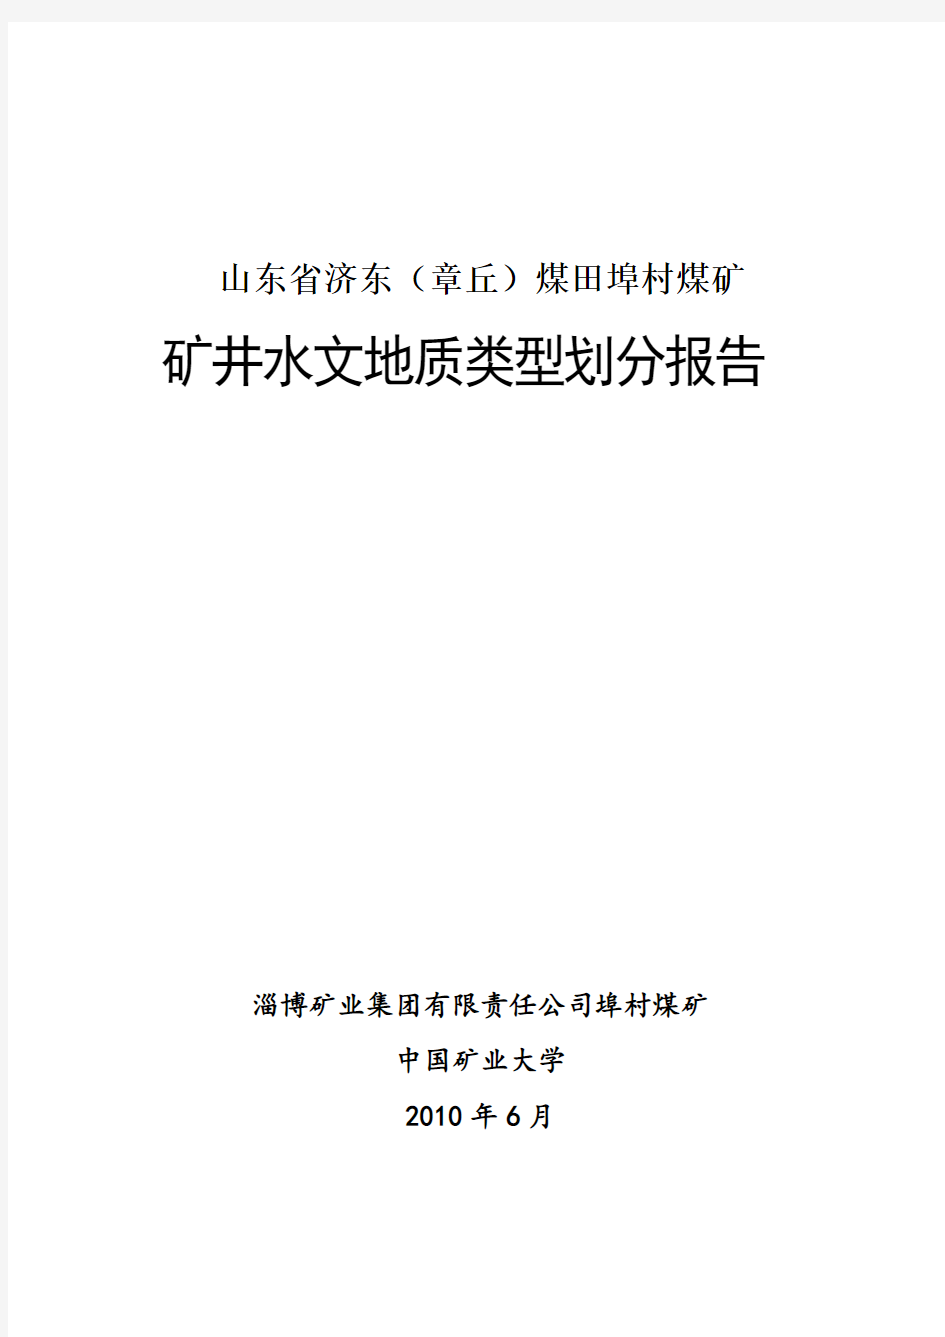 埠村矿水文地质类型分类报告(终稿)